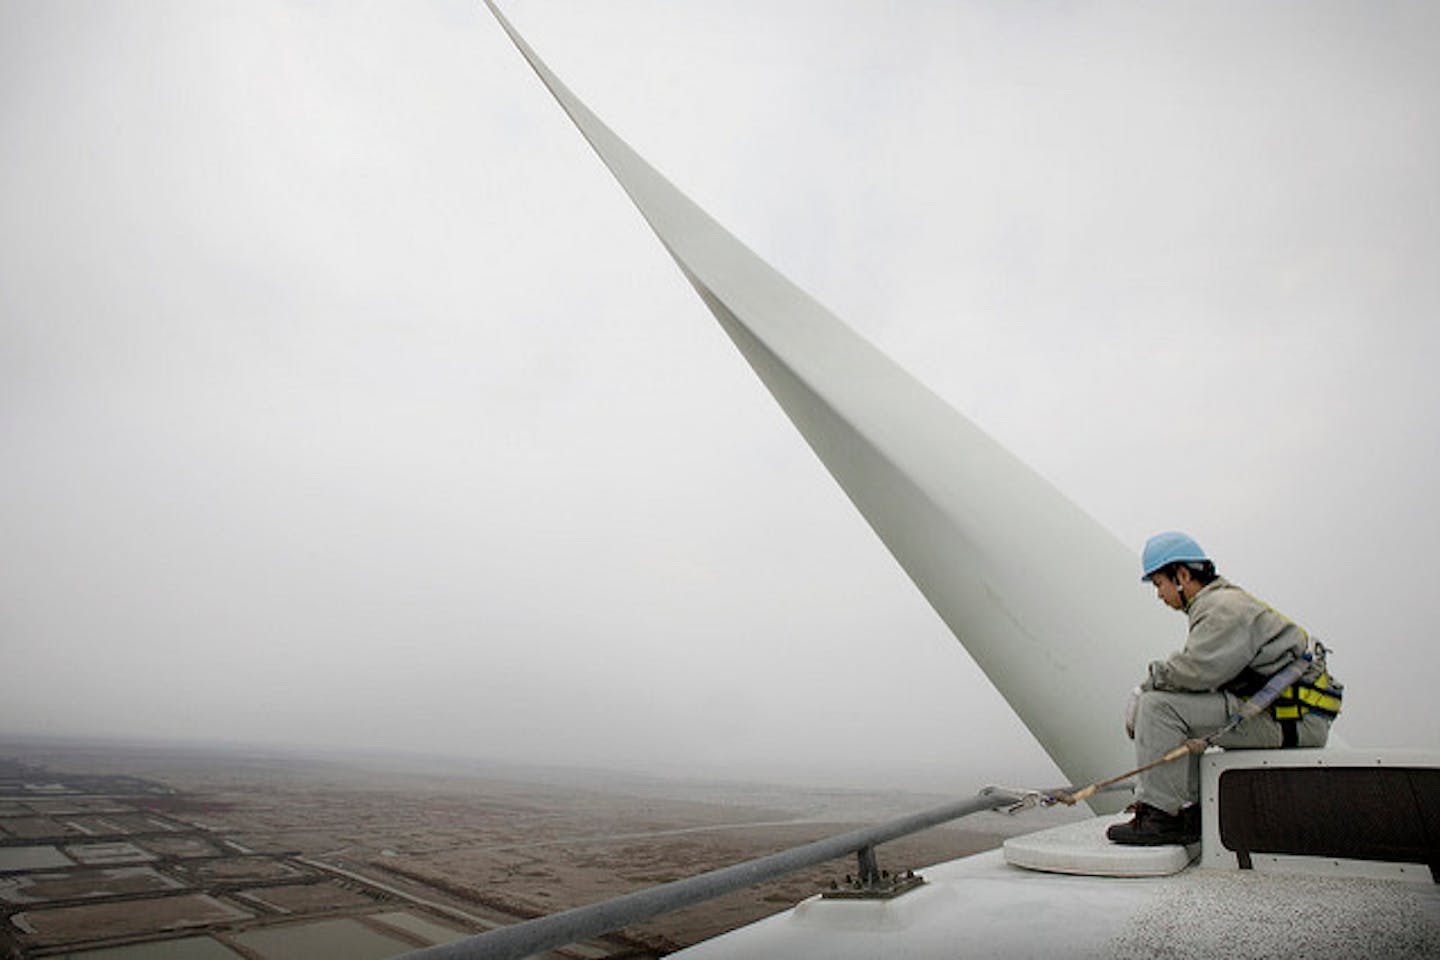 China wind energy